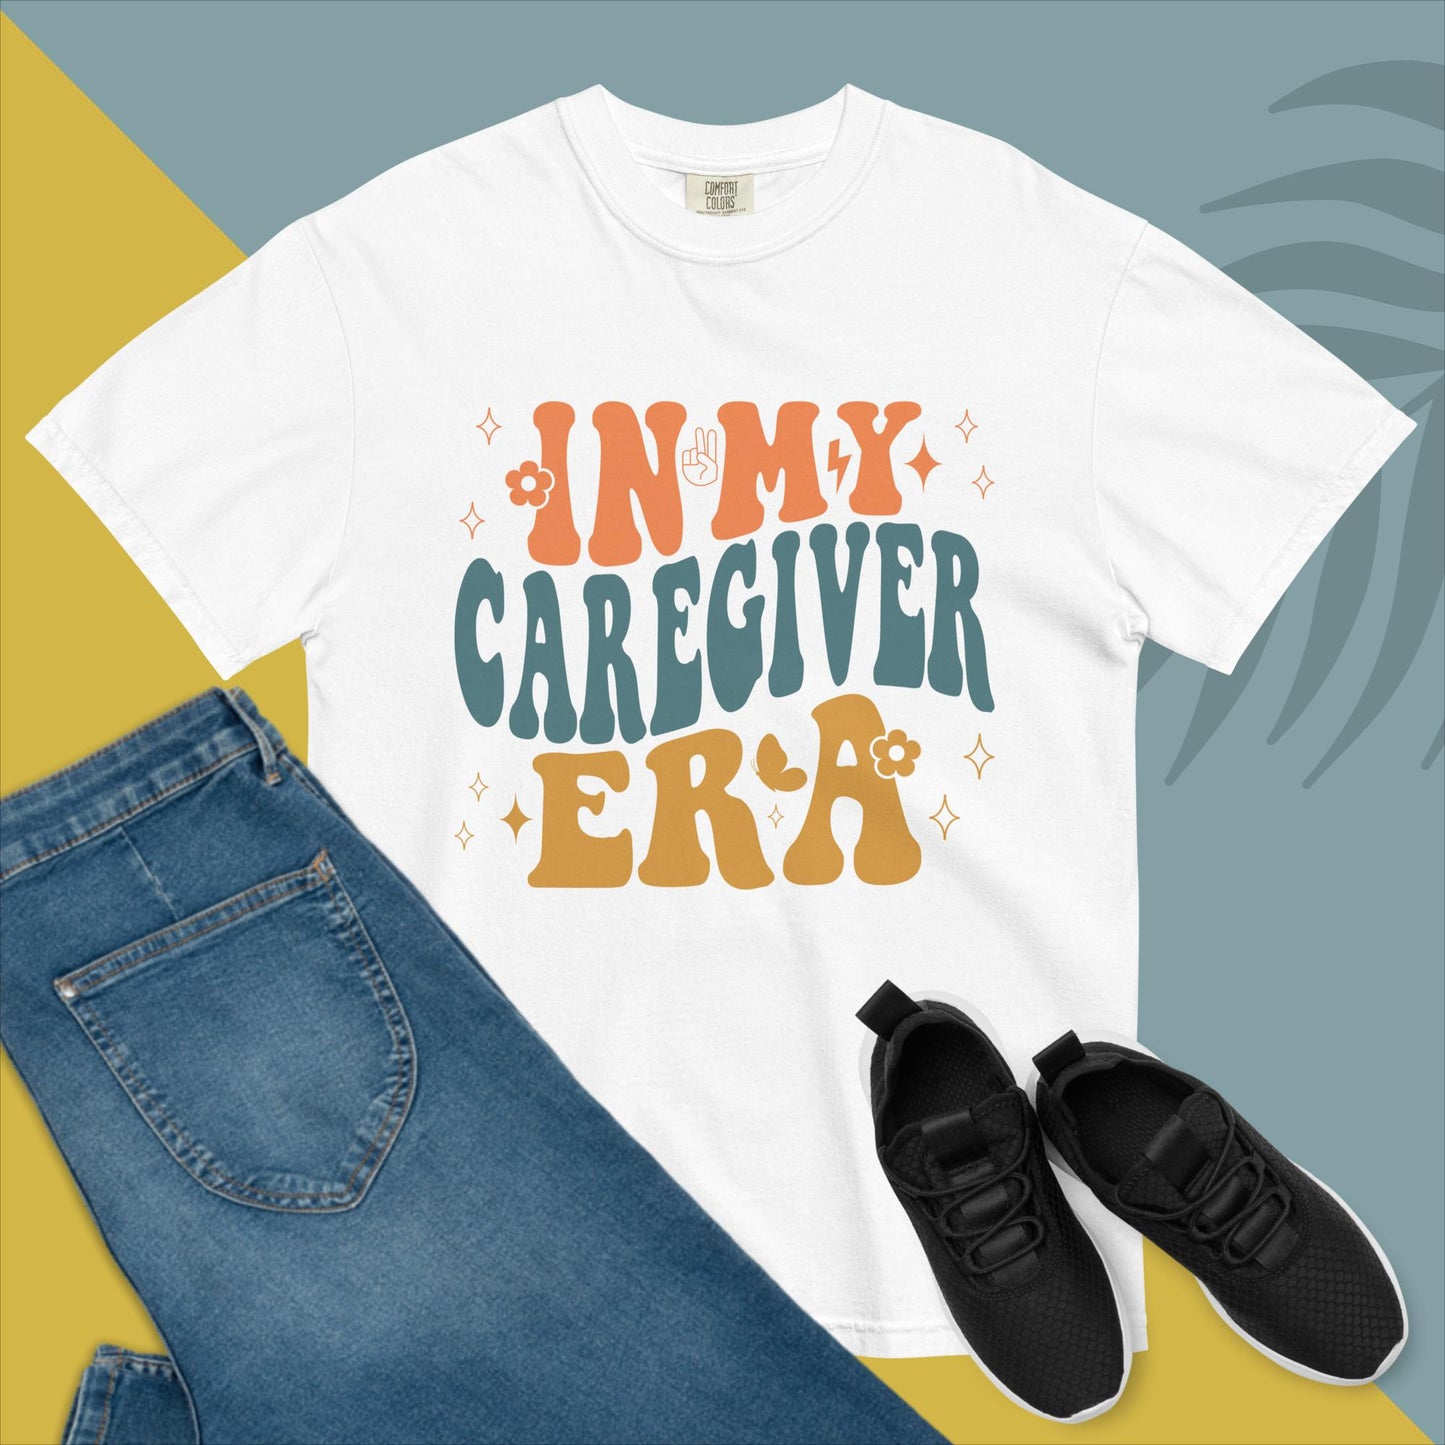 Caregiver Shirt | Home Care | Caregiver Nurse Shirt | In my Caregiver Era